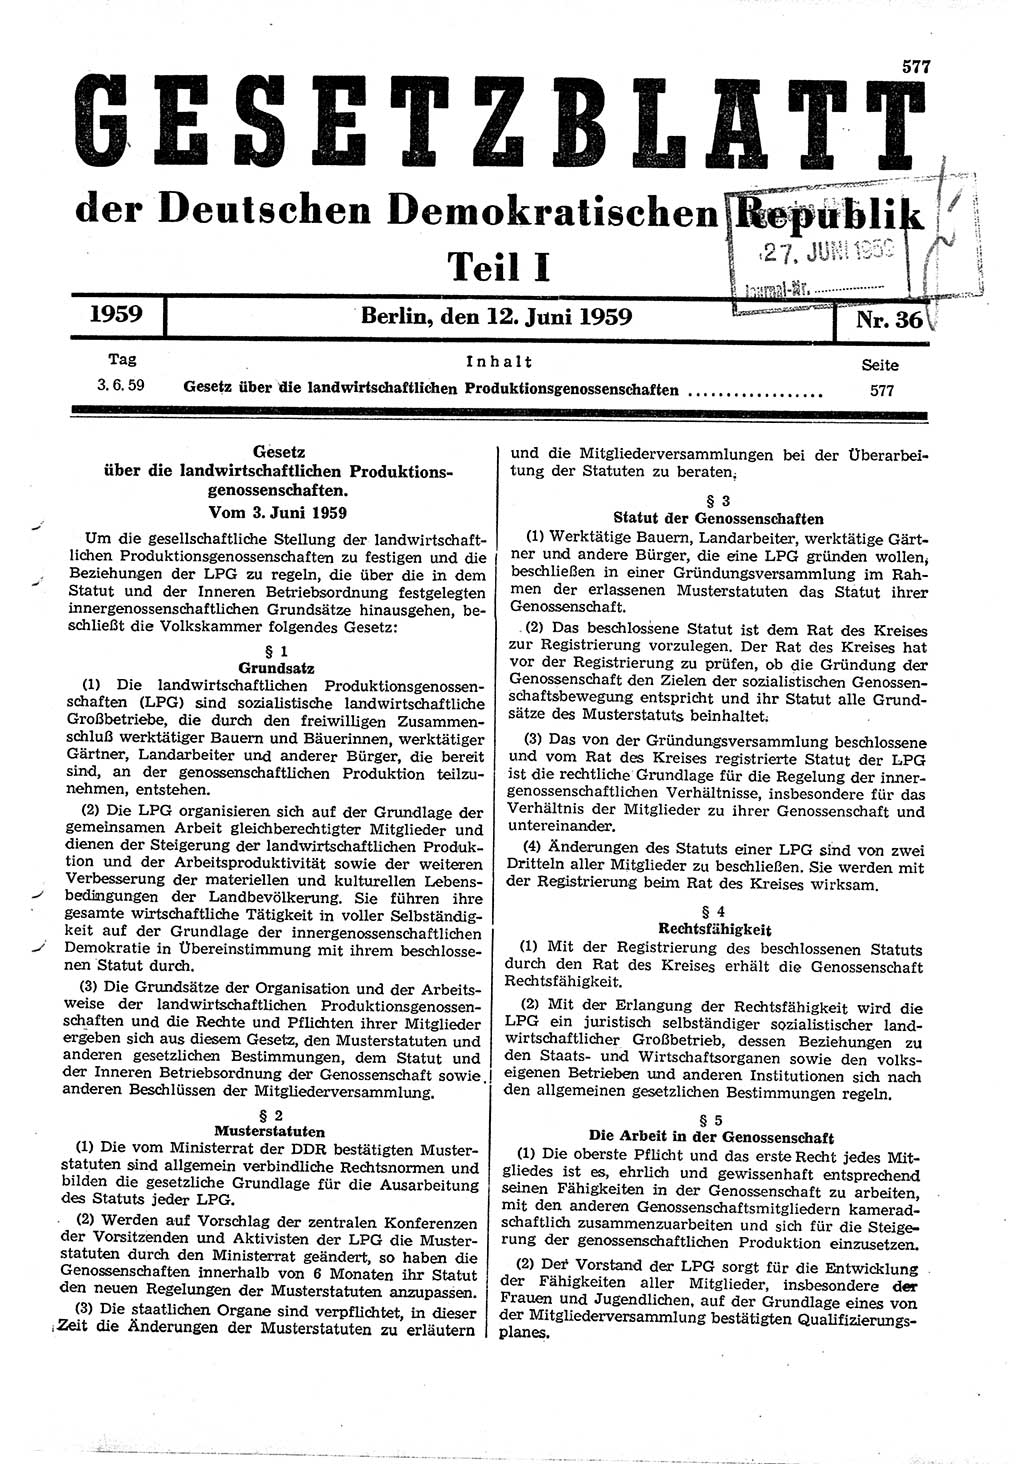 Gesetzblatt (GBl.) der Deutschen Demokratischen Republik (DDR) Teil Ⅰ 1959, Seite 577 (GBl. DDR Ⅰ 1959, S. 577)